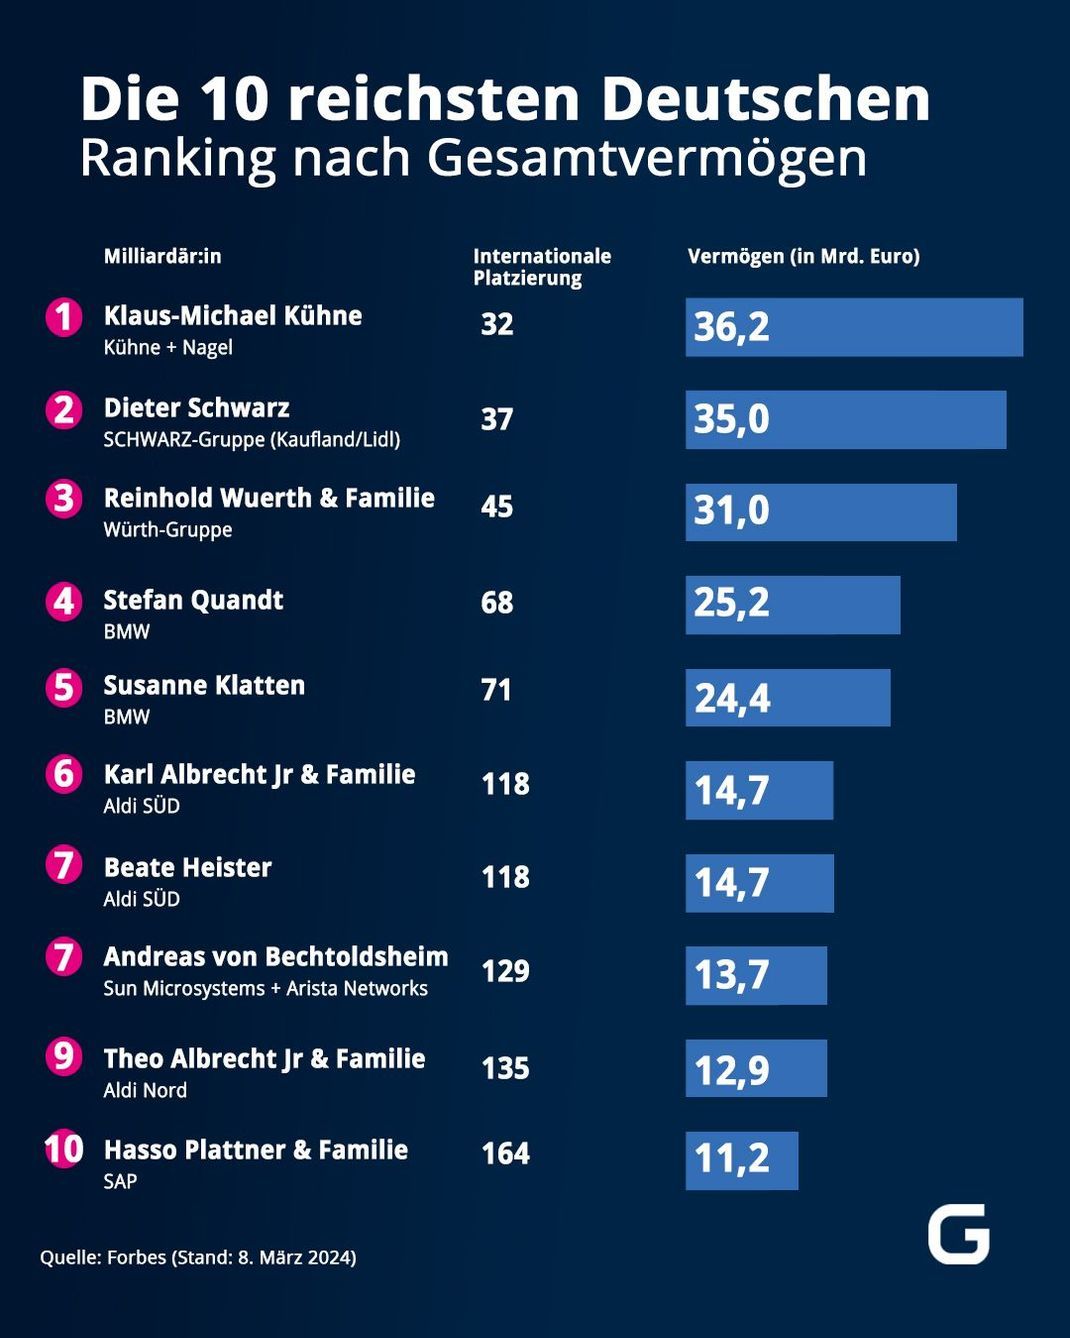 Die 10 reichsten Deutschen - Ranking nach Gesamtvermögen (Stand: 8. März 2024)